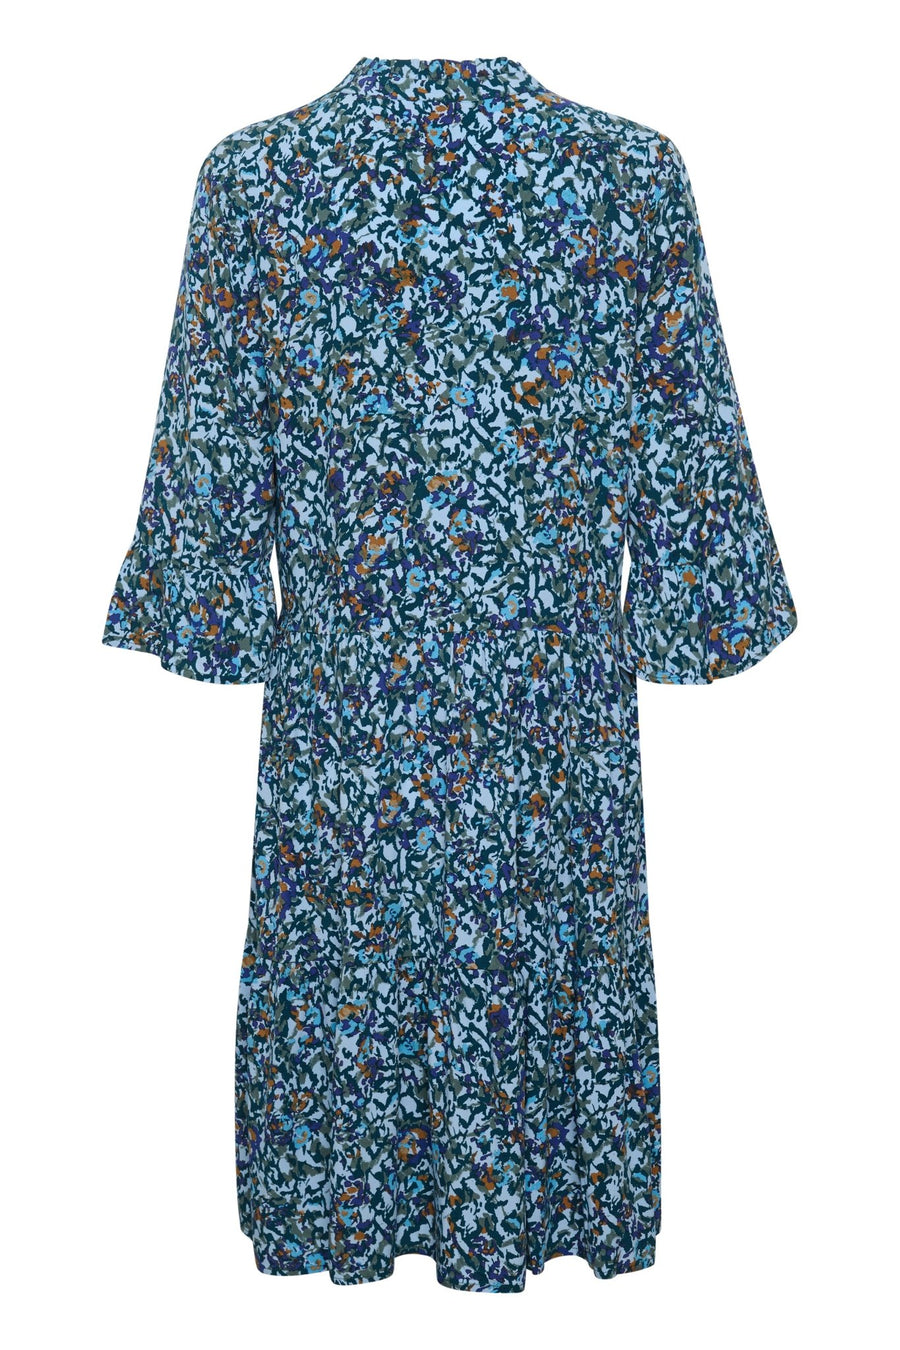 Eda dress - cashmere blue print - Blue Sky Clothing & Lingerie